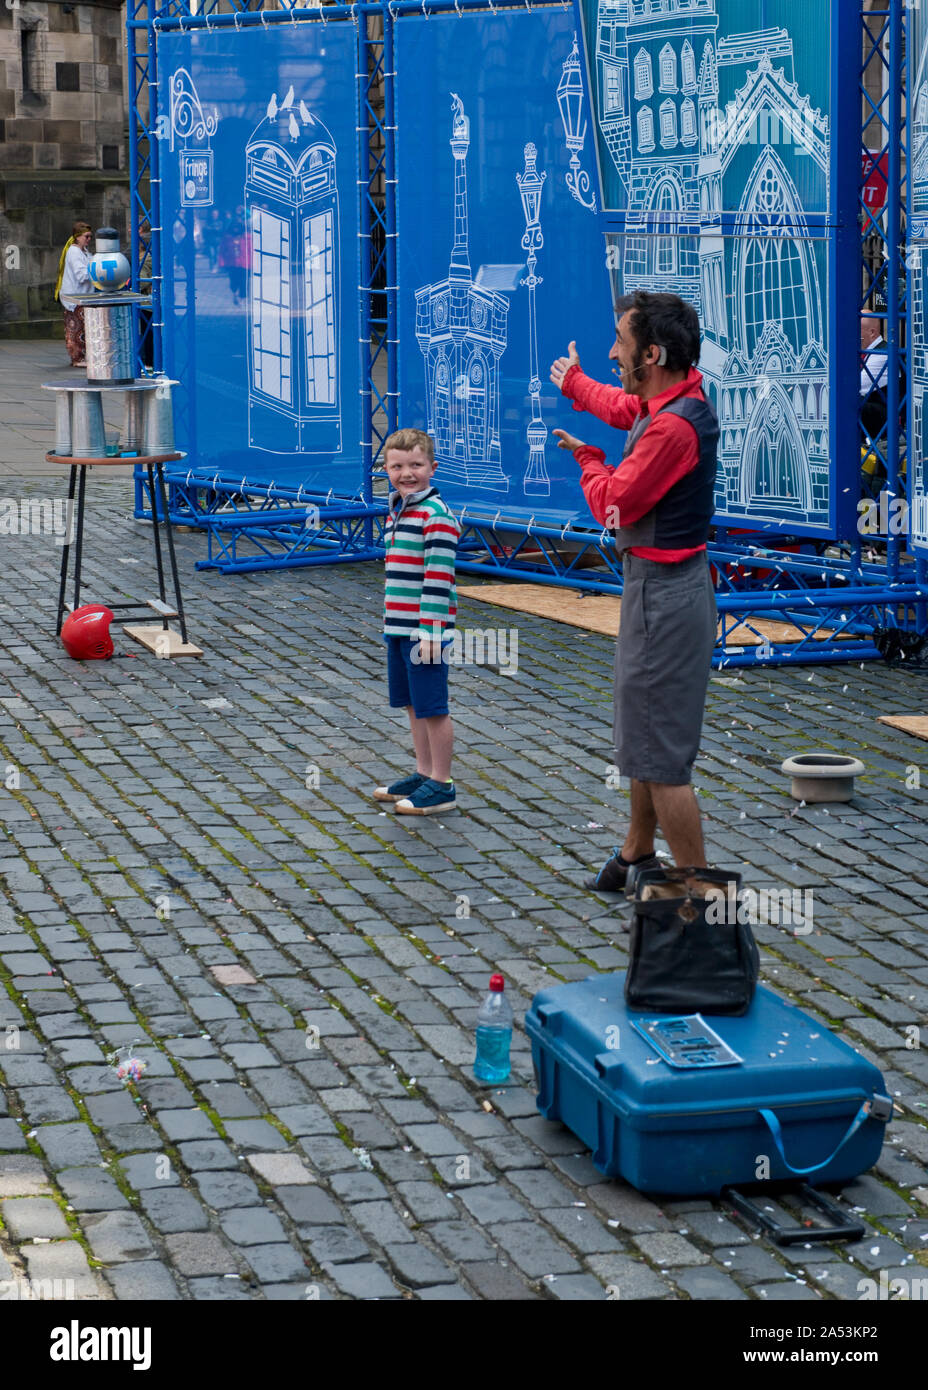 Jeune garçon dans le public prenant part à la rue. Edinburgh Fringe Festival. Royal Mile, Ecosse Banque D'Images